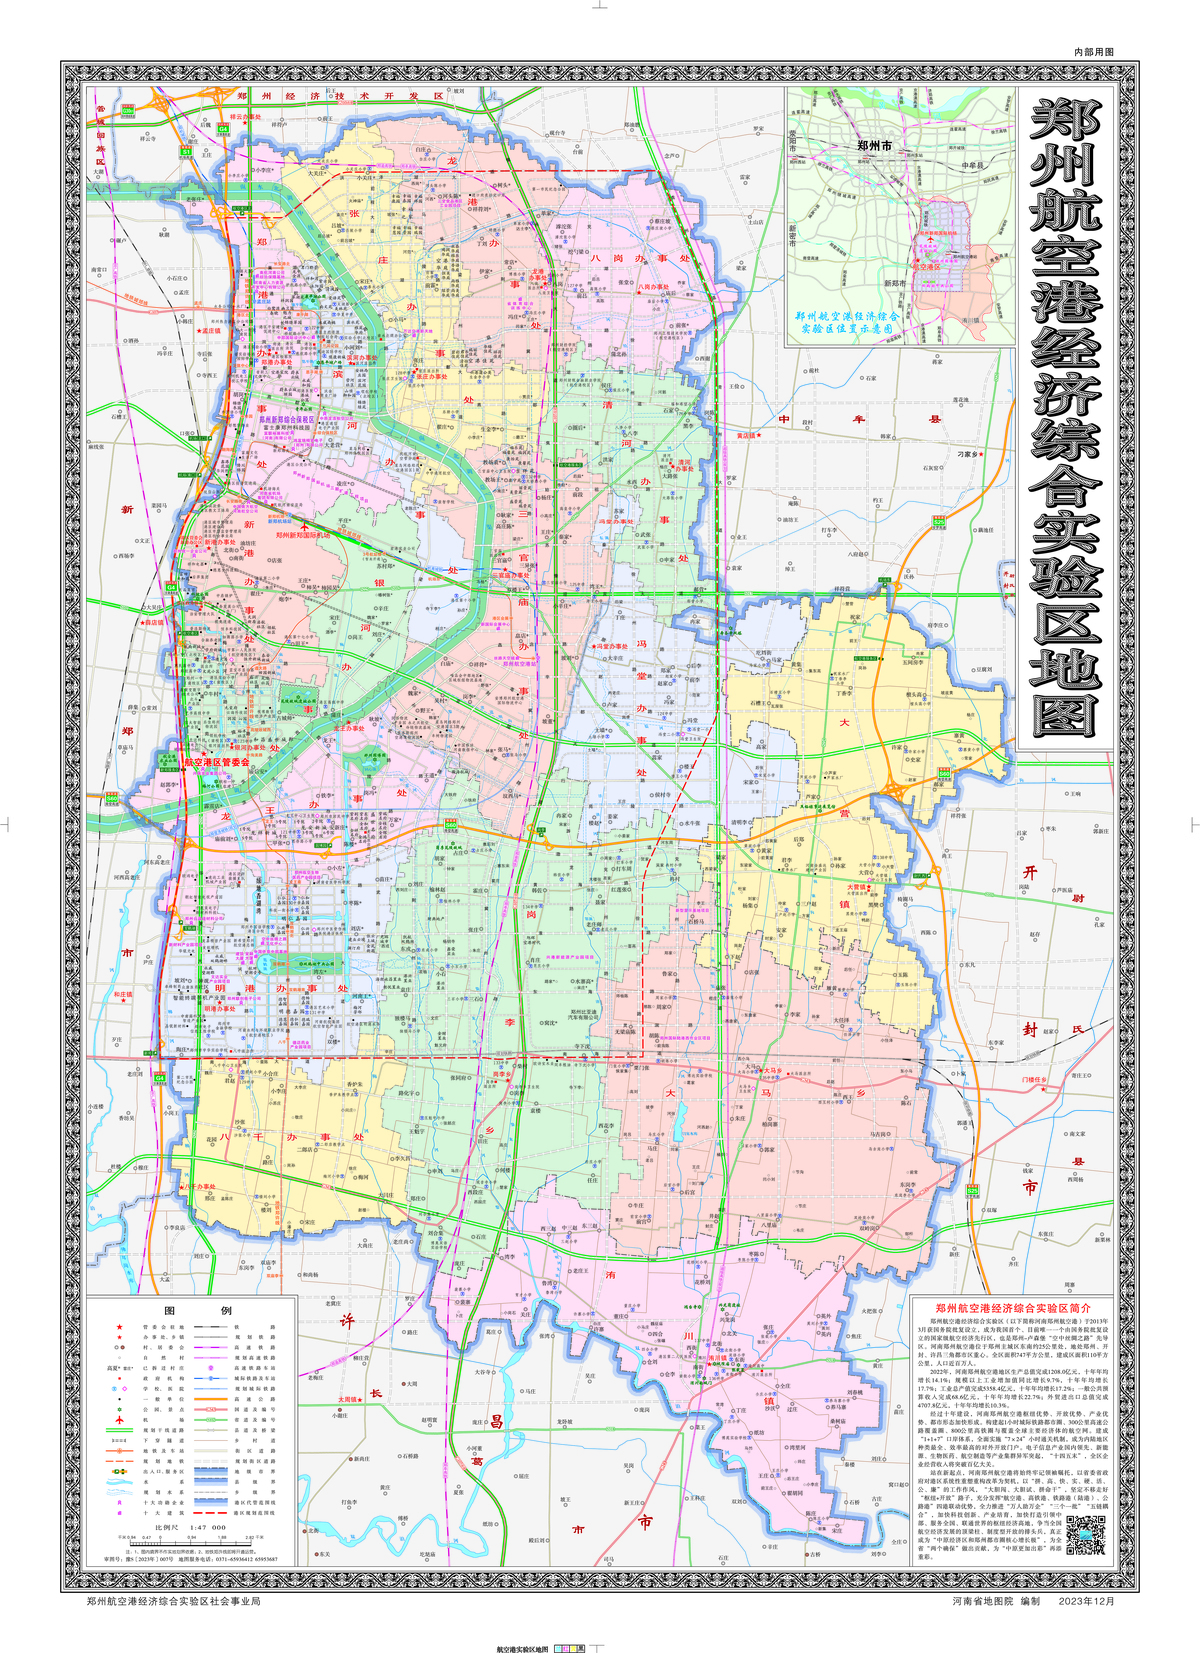 河南郑州航空港区地图